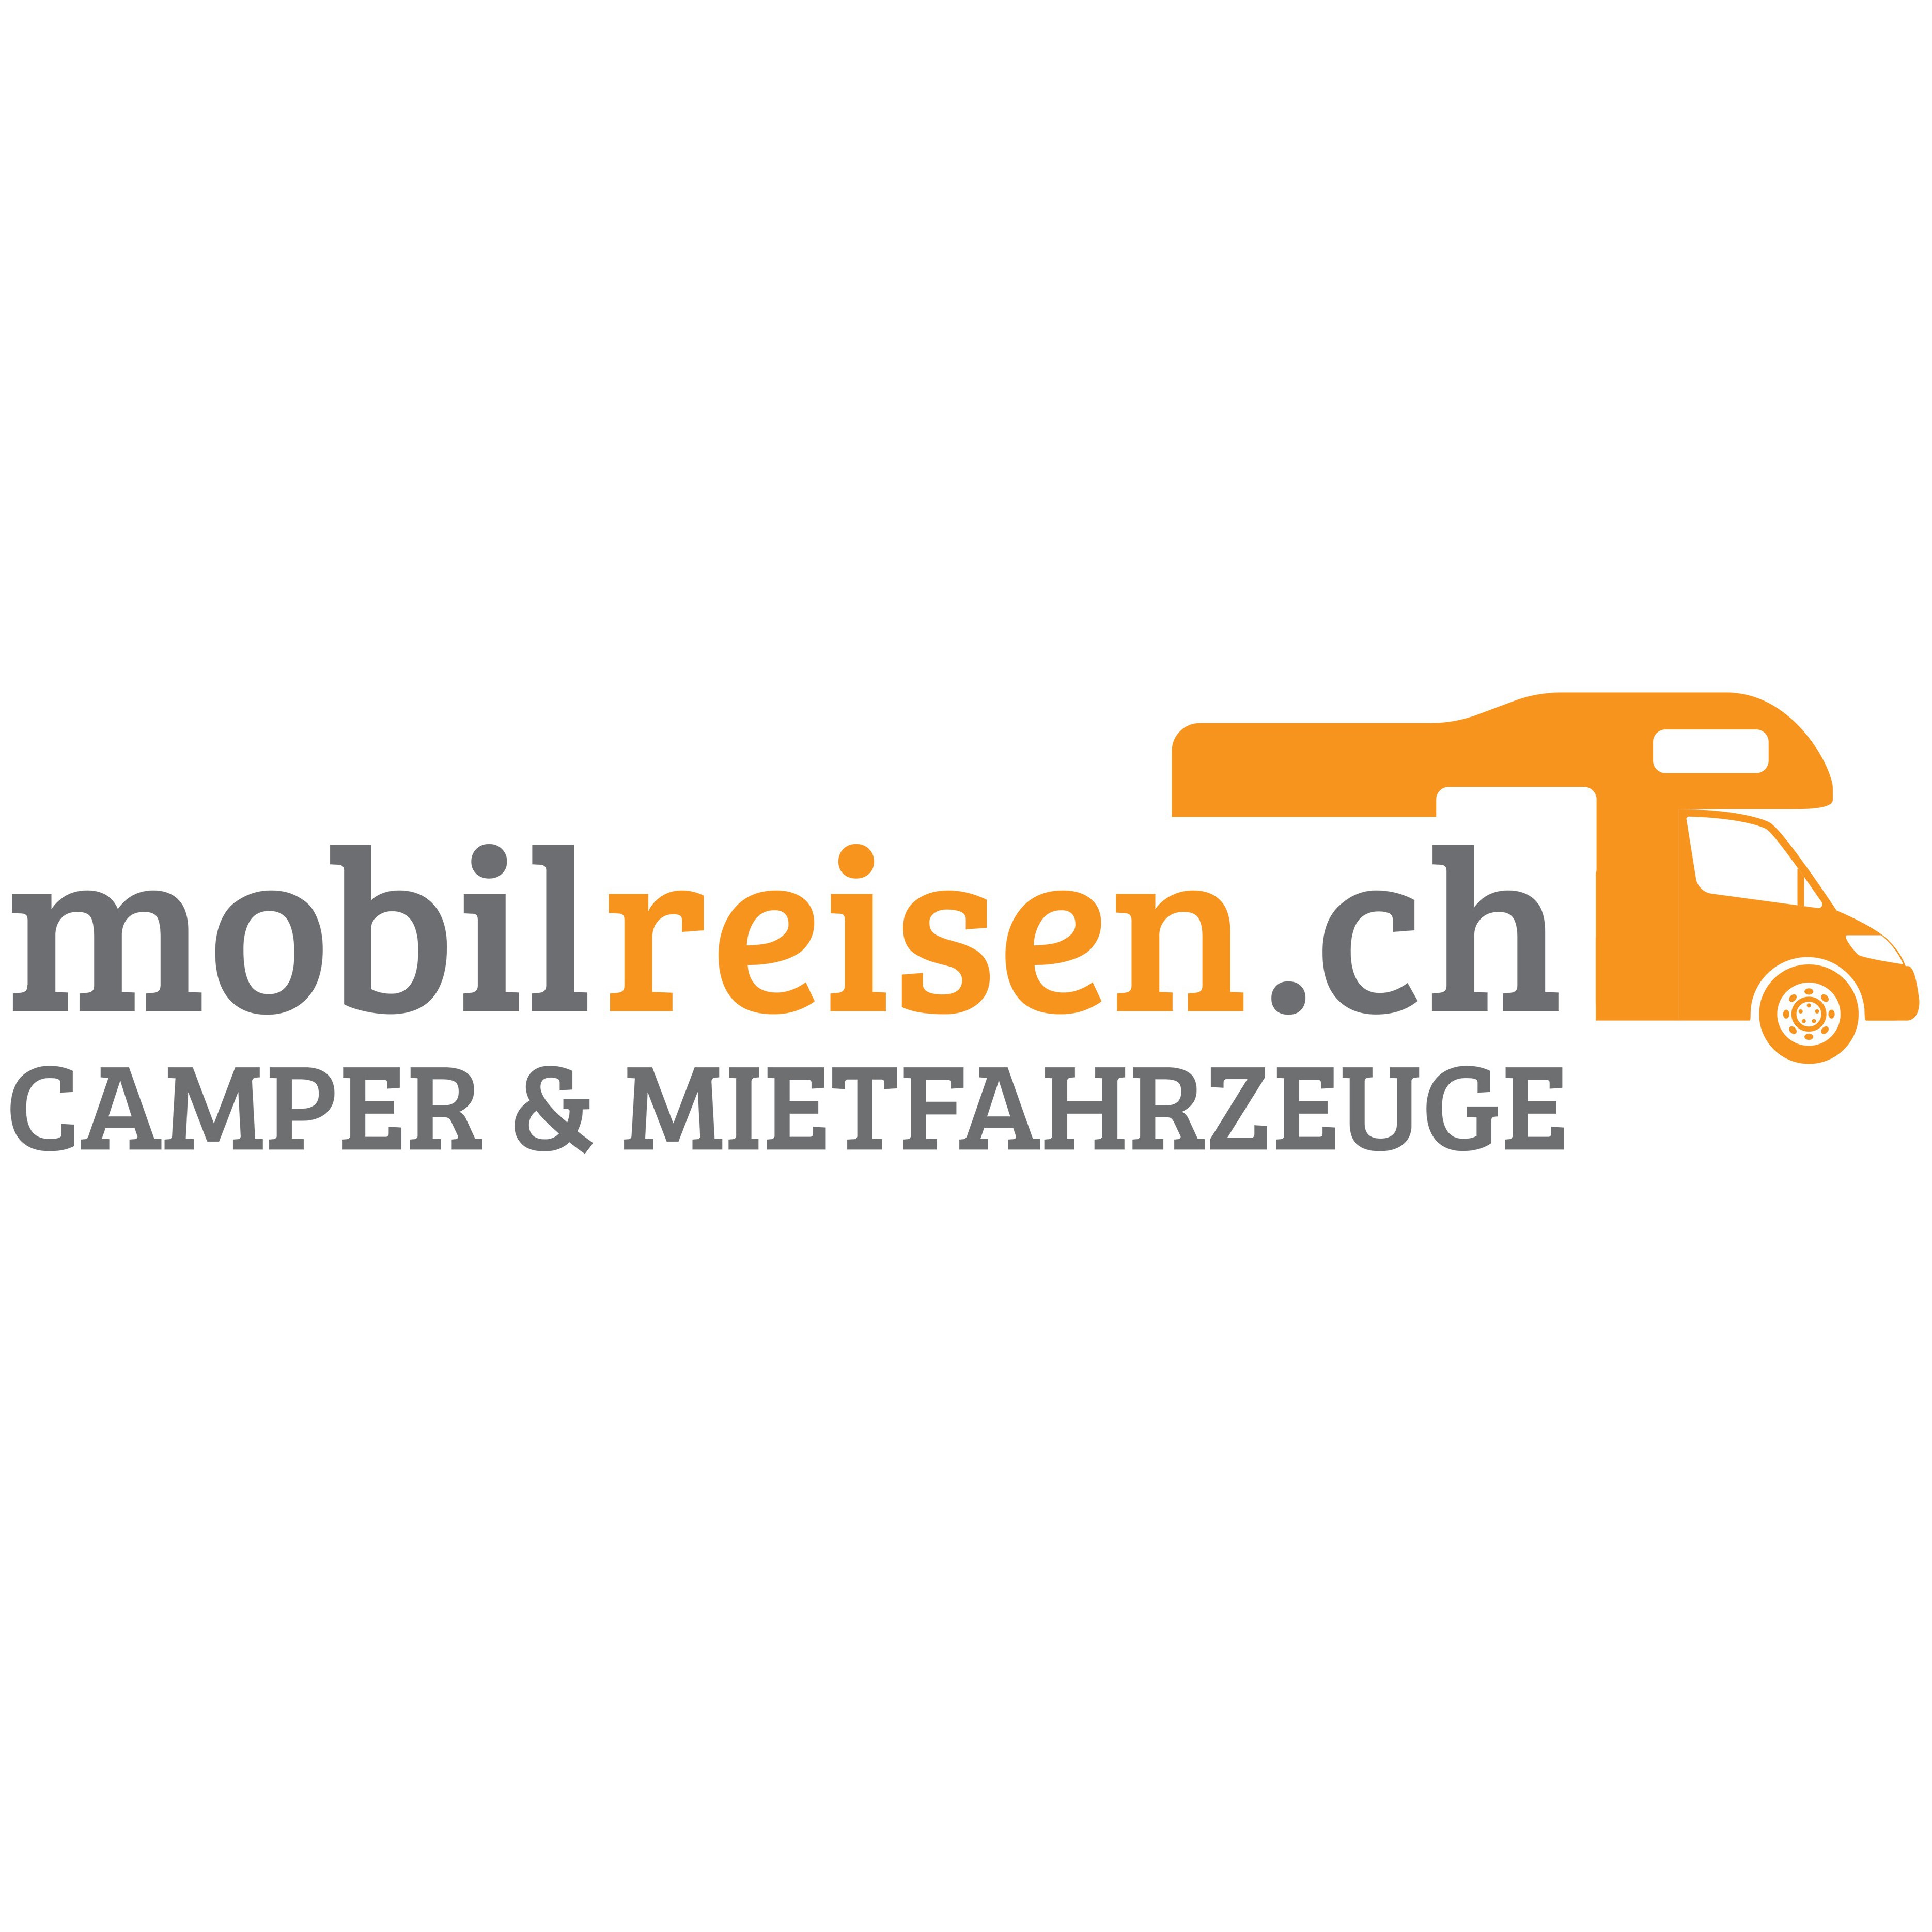 mobilreisen.ch Camper & Mietfahrzeuge Logo